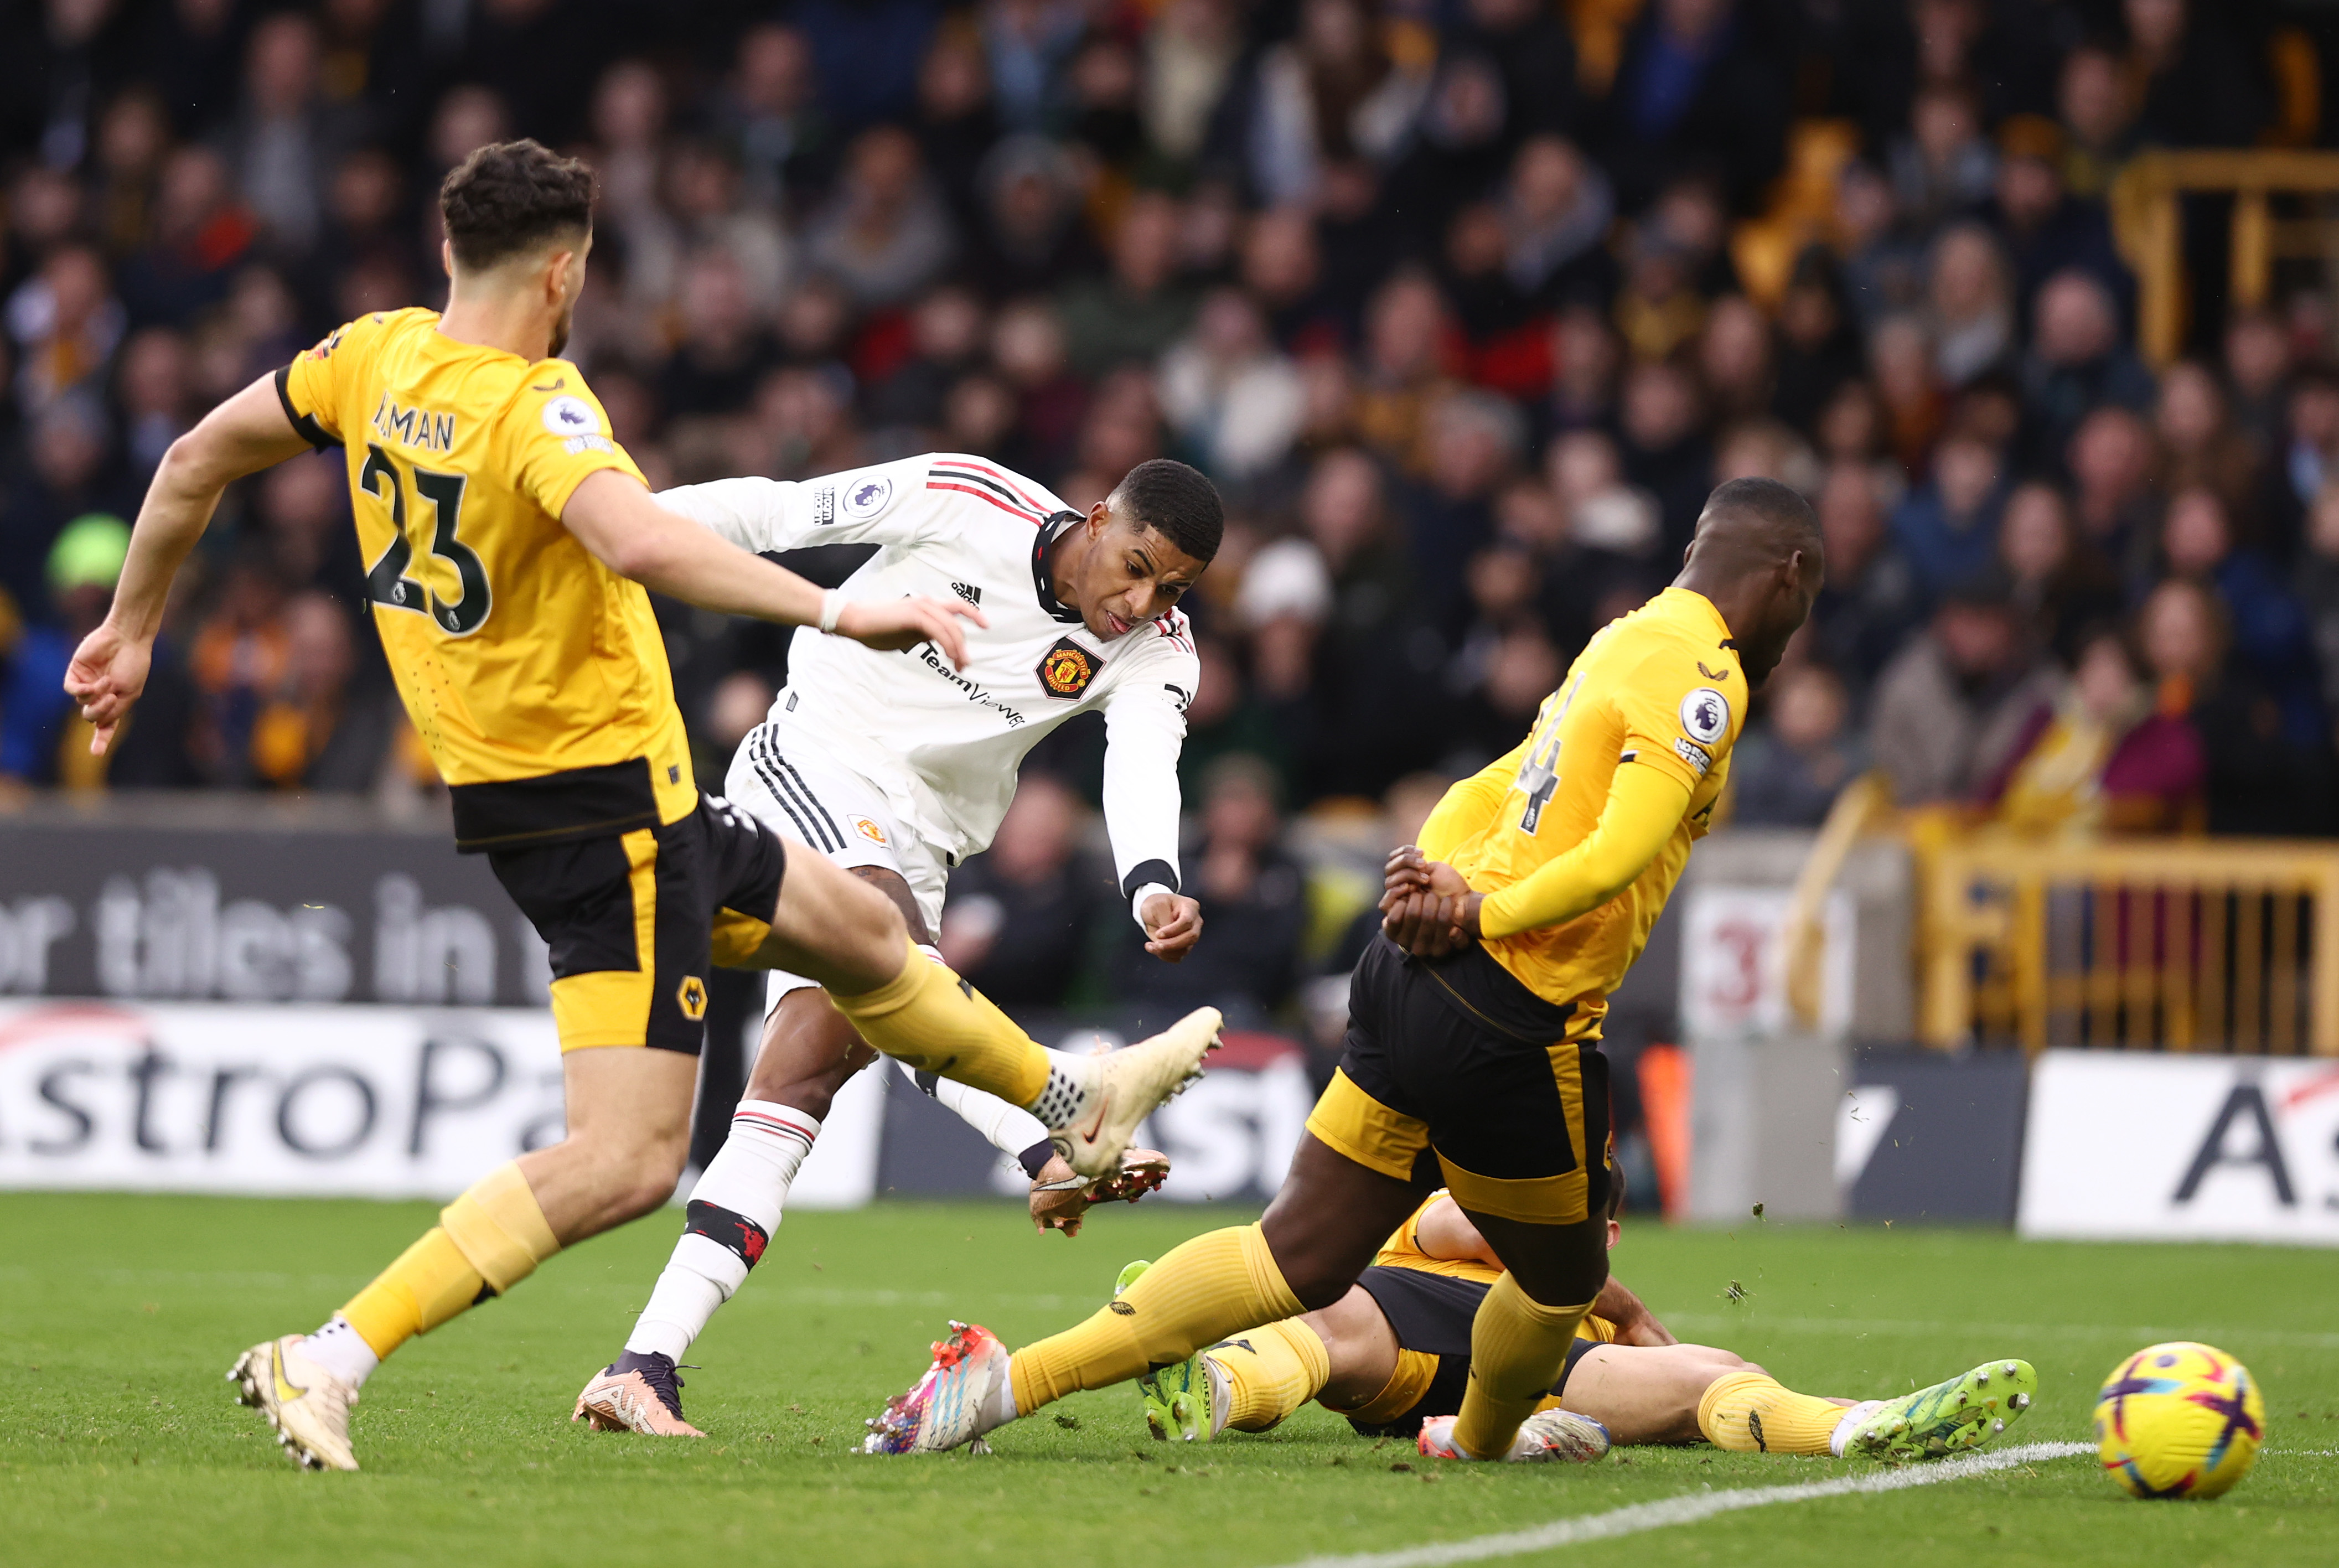 Wolverhampton - Manchester United 0-1. Rezerva Rashford, un gol și altul anulat. De Gea și-a salvat echipa în prelungiri